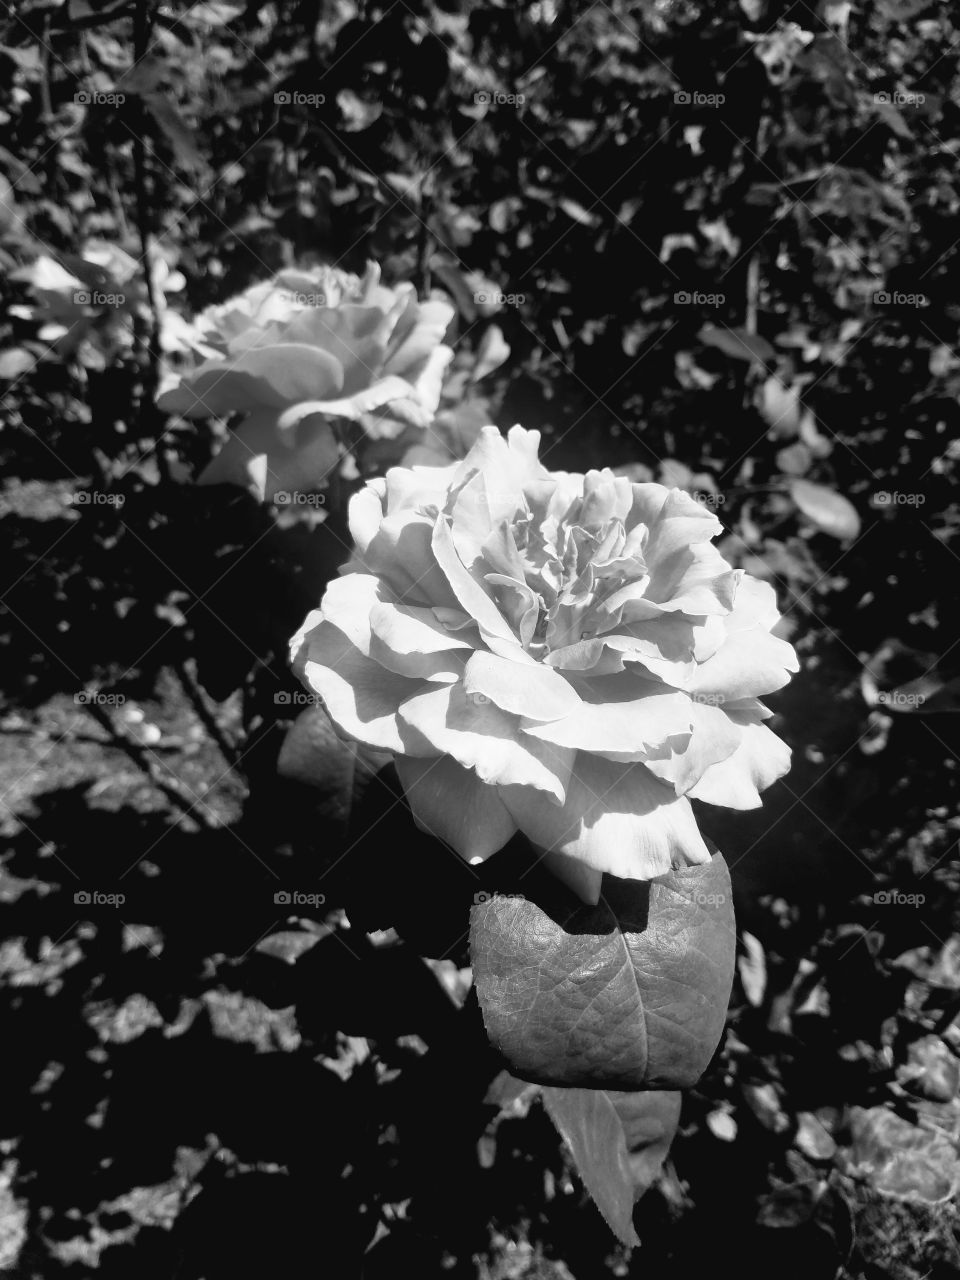 Rose in Black & White